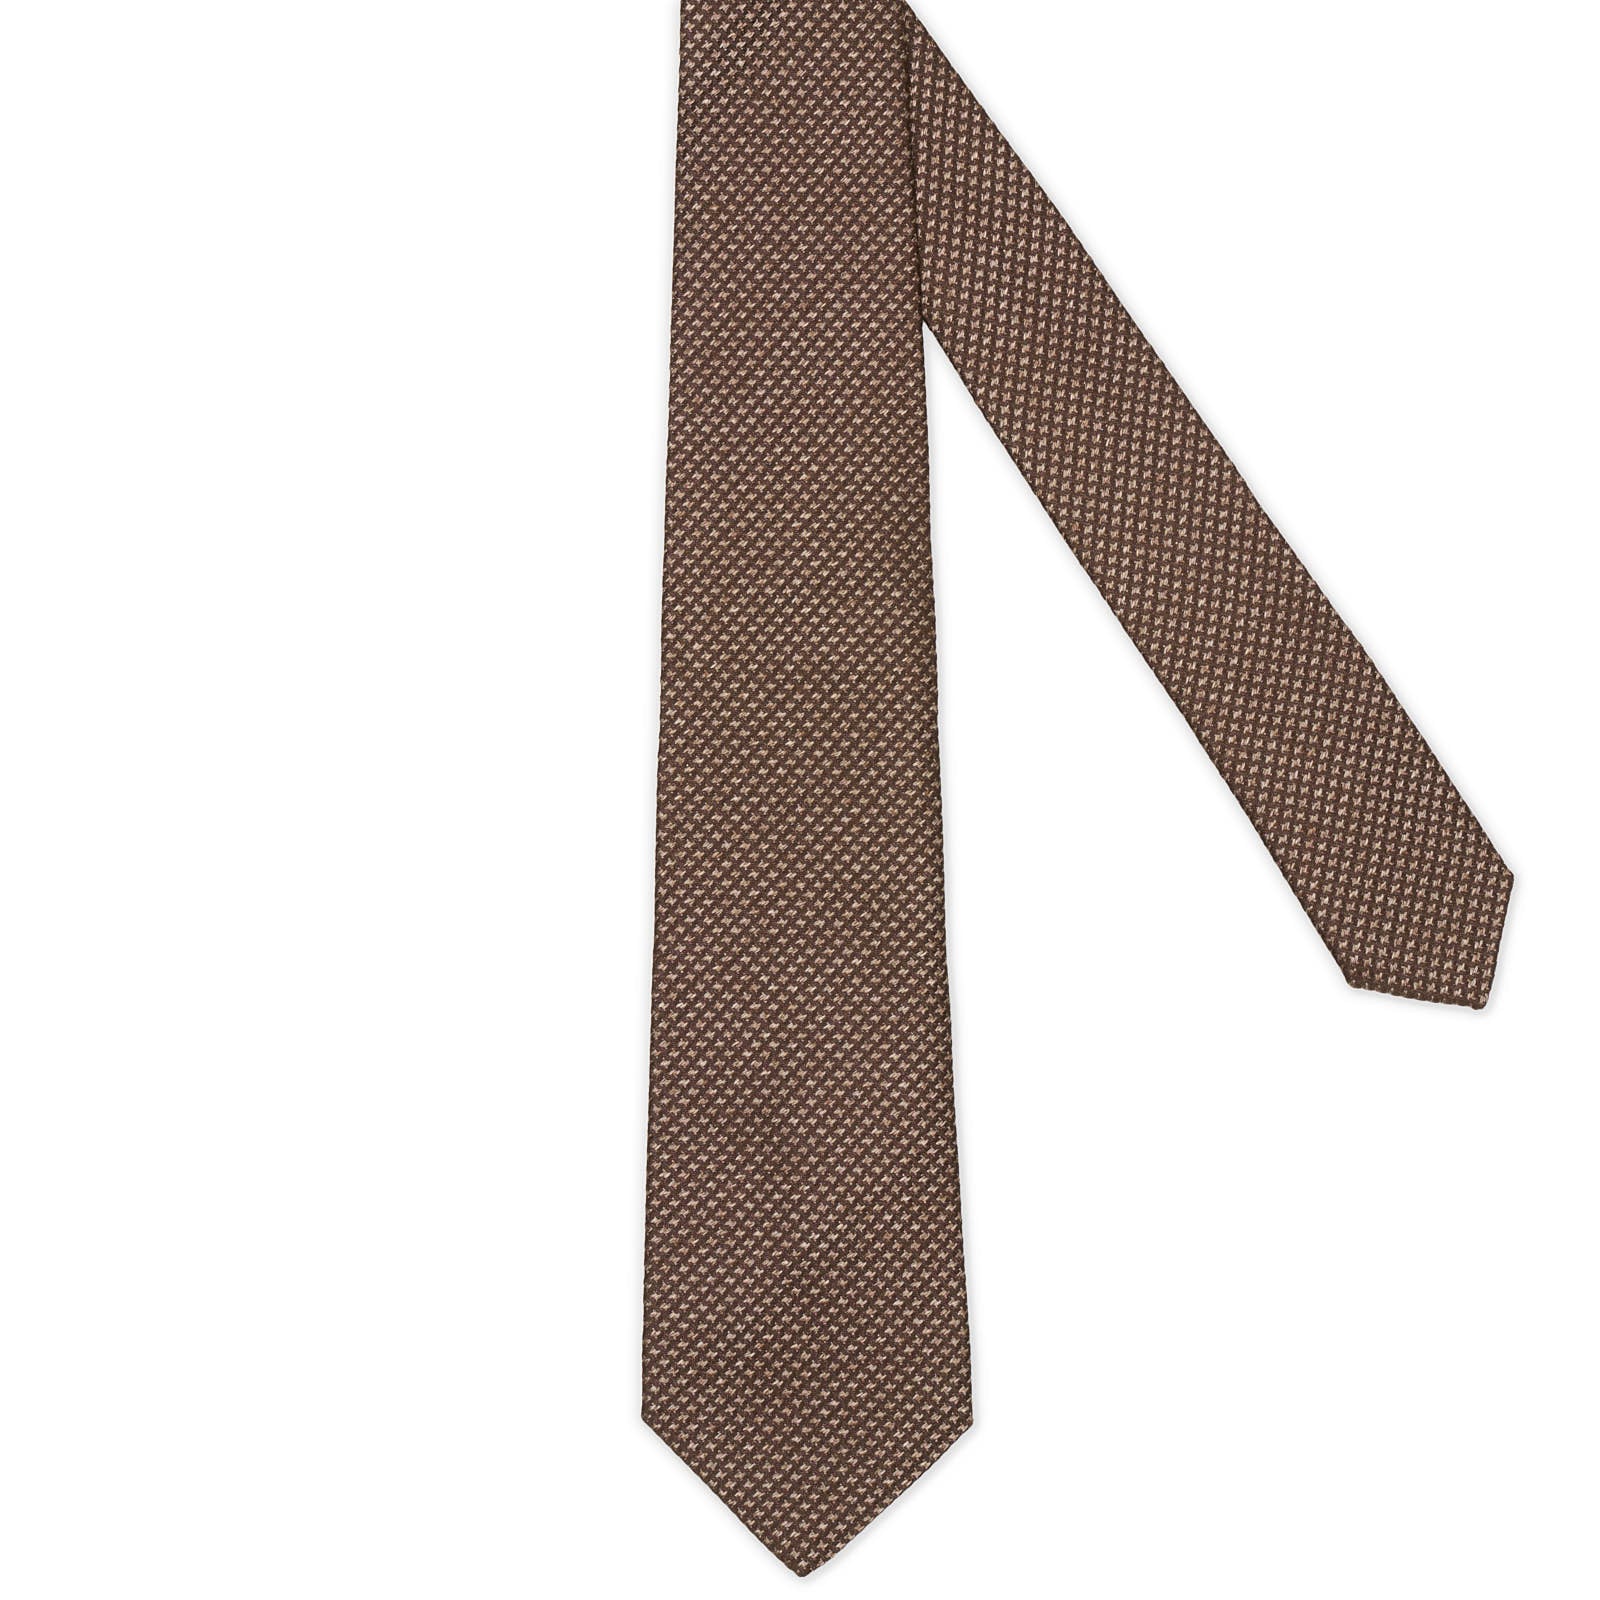 MATTABISCH FOR VANNUCCI Brown Nailhead Silk Tie NEW